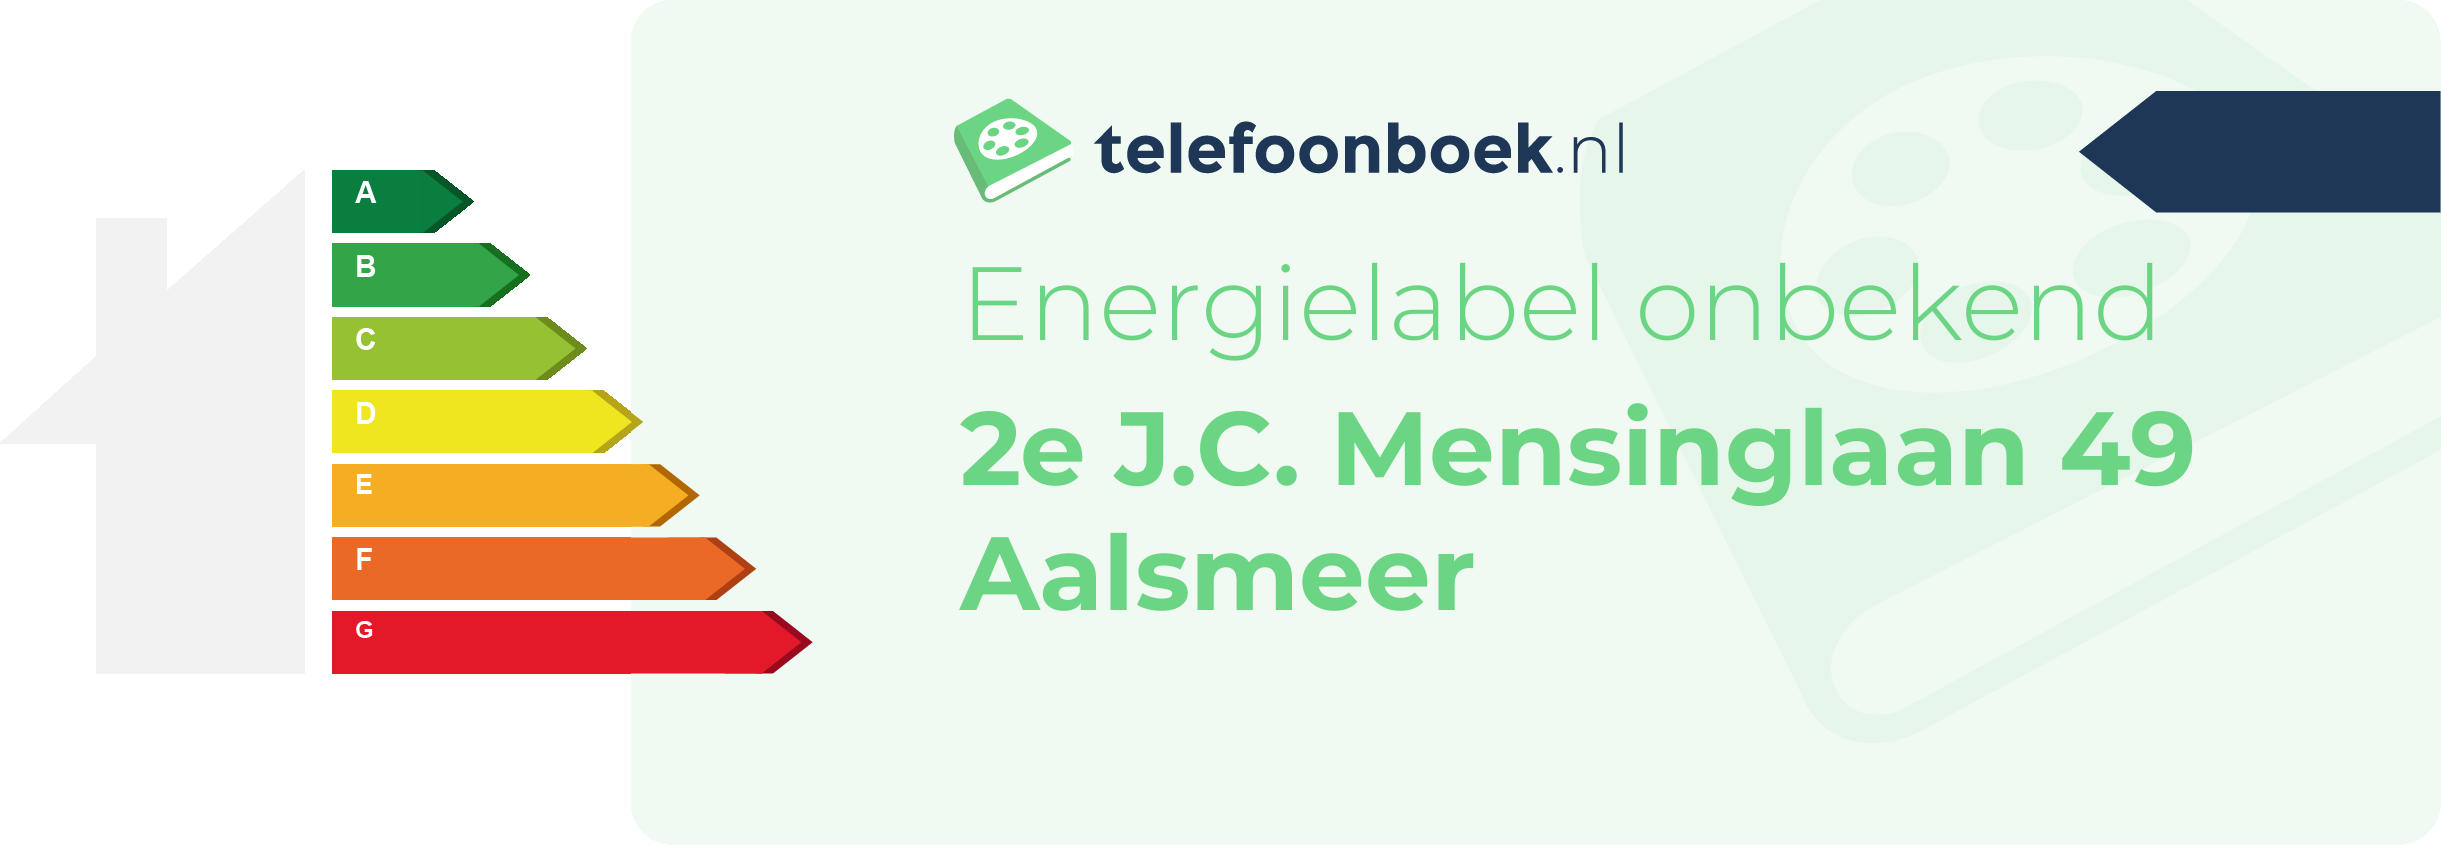 Energielabel 2e J.C. Mensinglaan 49 Aalsmeer